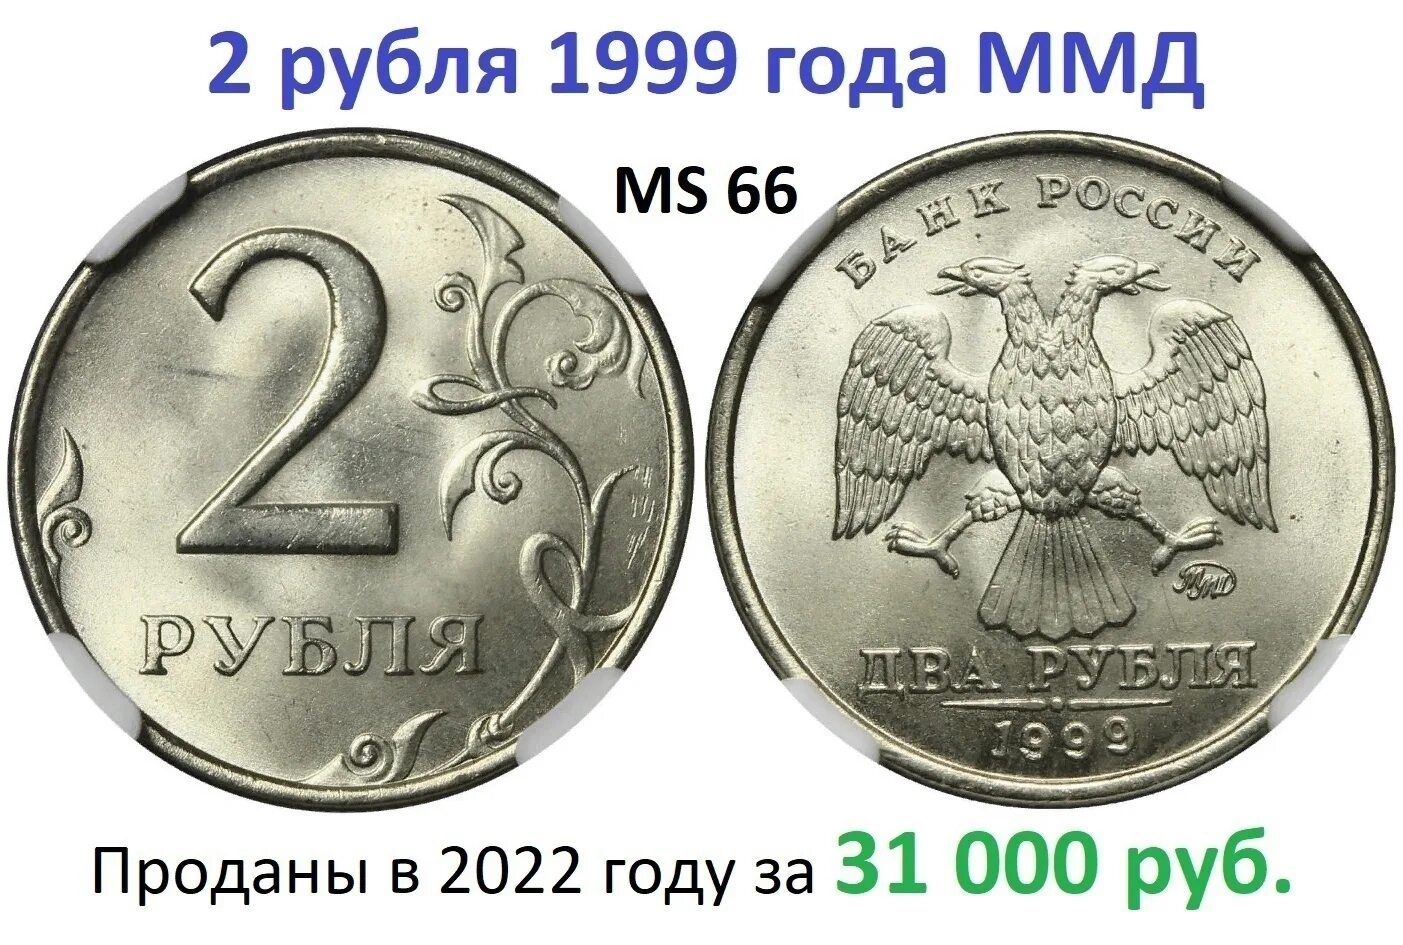 5 Рублей 1999 года. 10 Рублей 1999 года. 1 Рубль 1999 ММД.